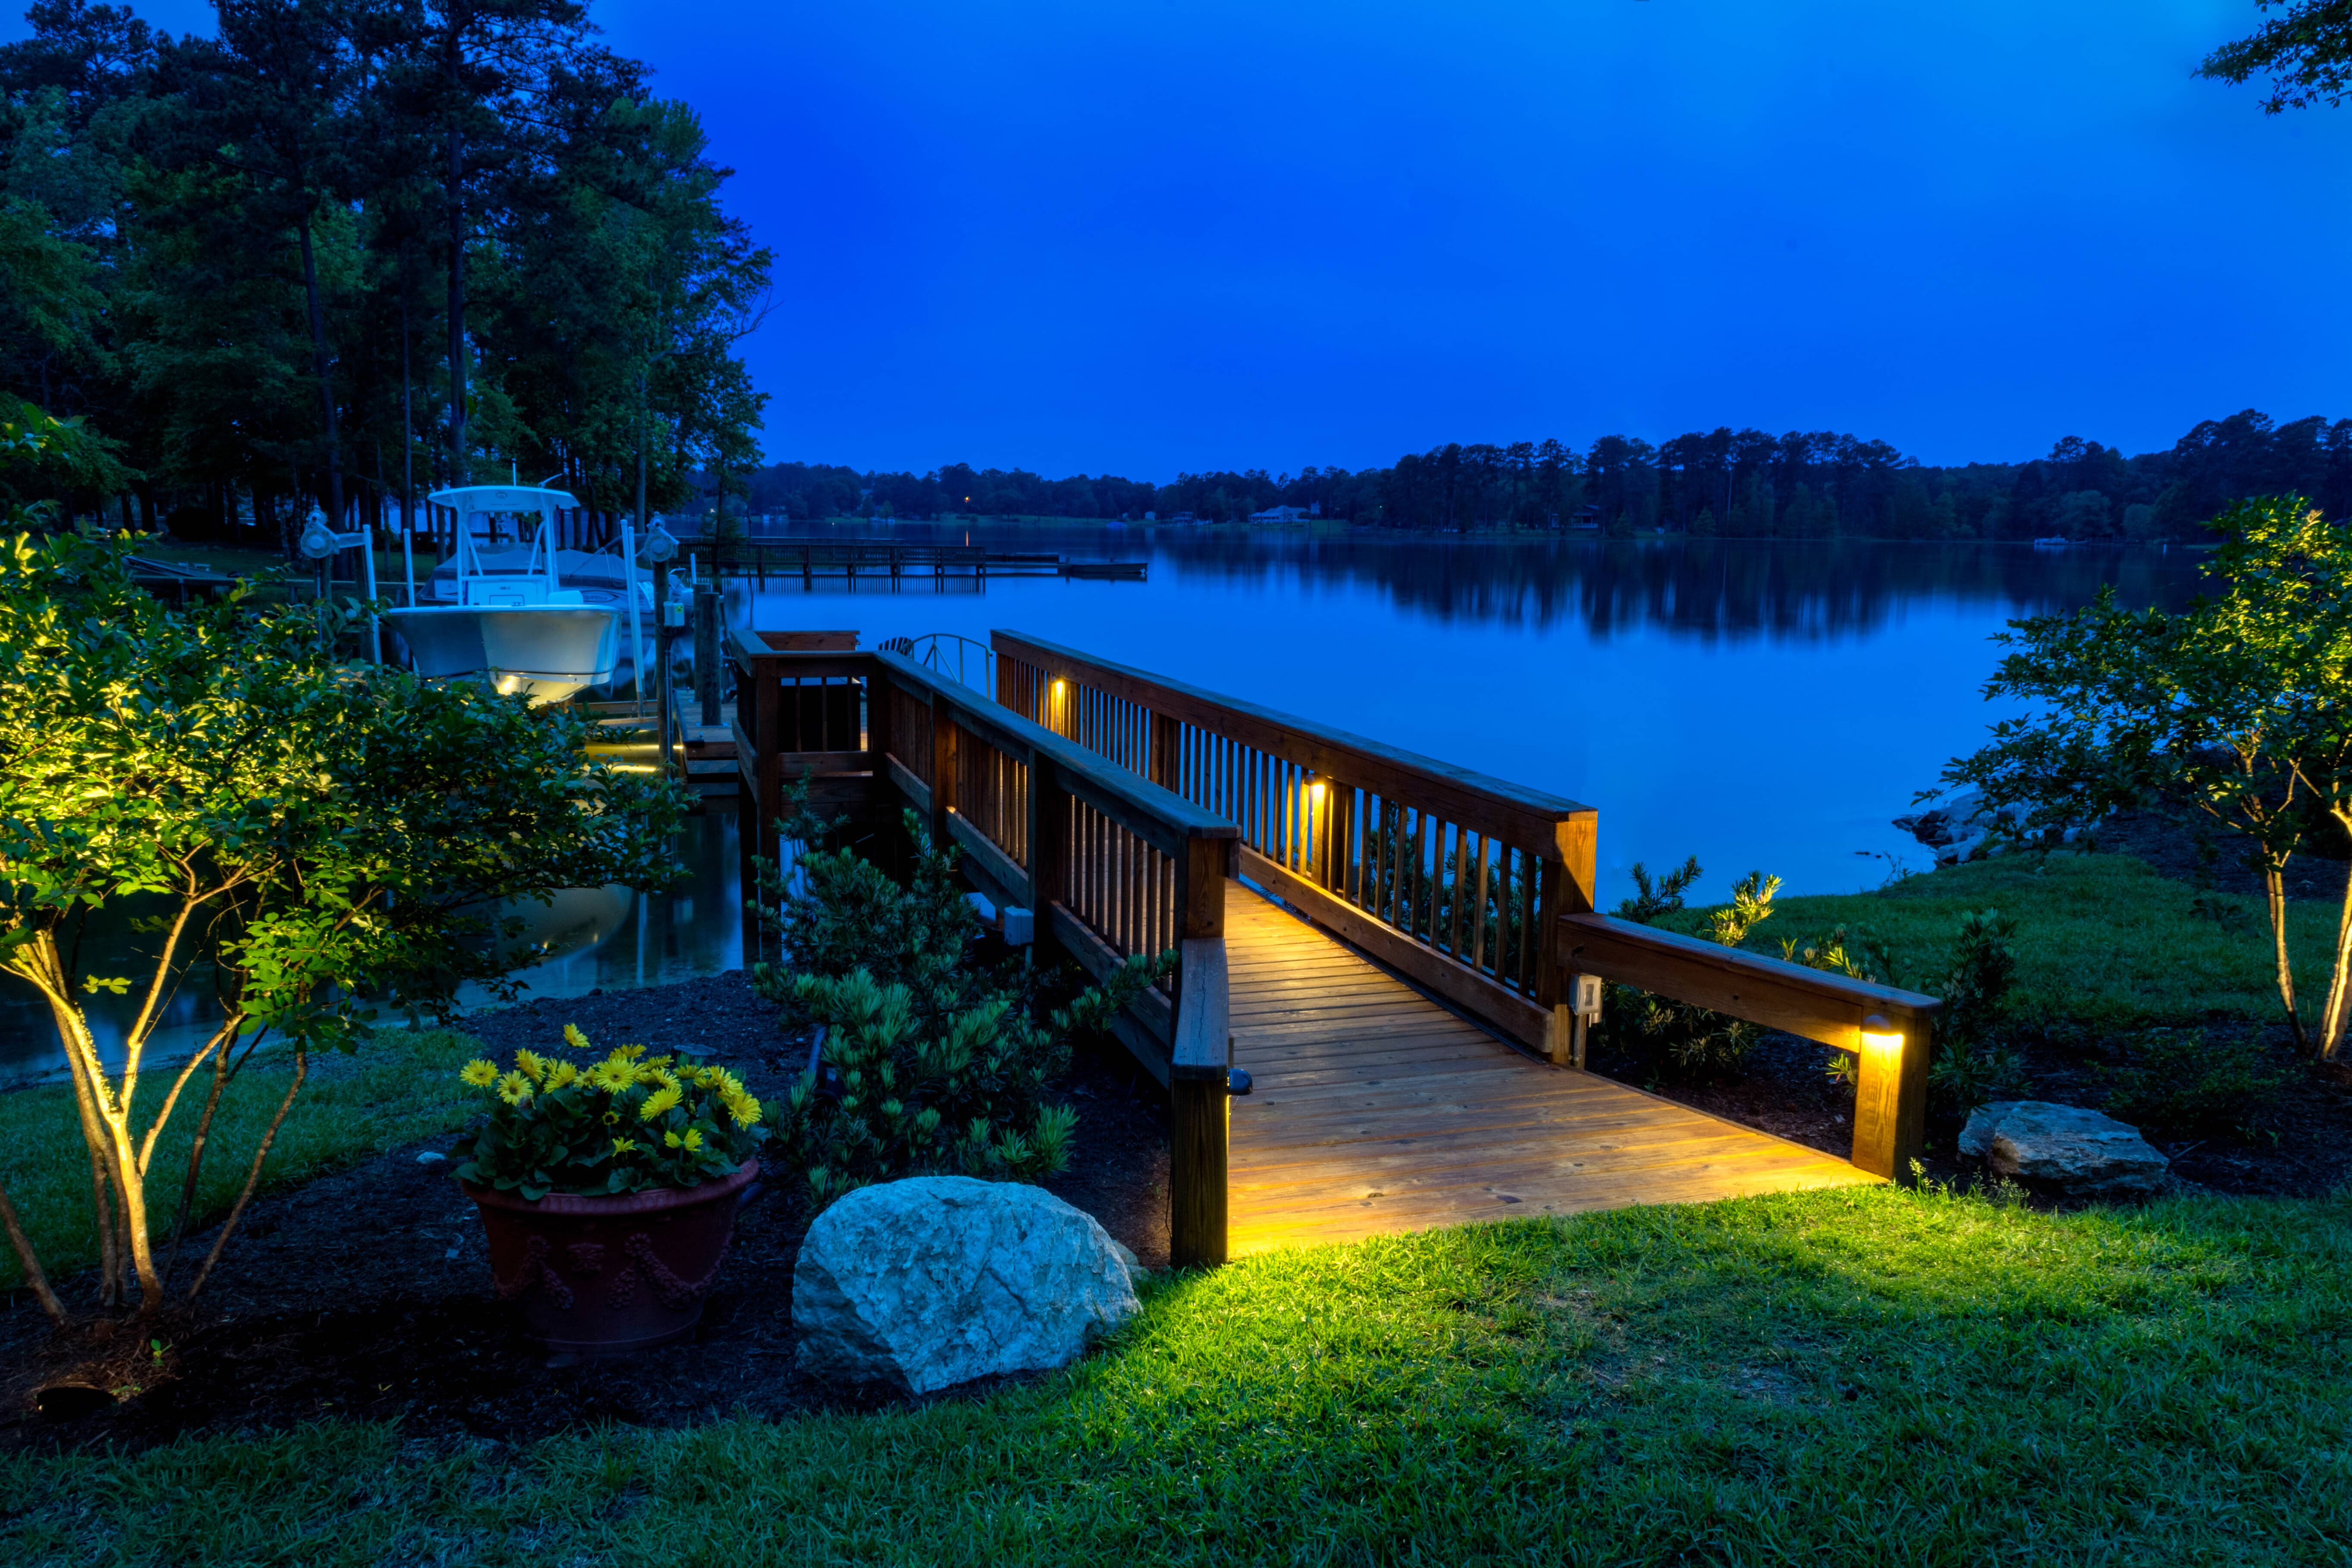 Professional outdoor dock lighting